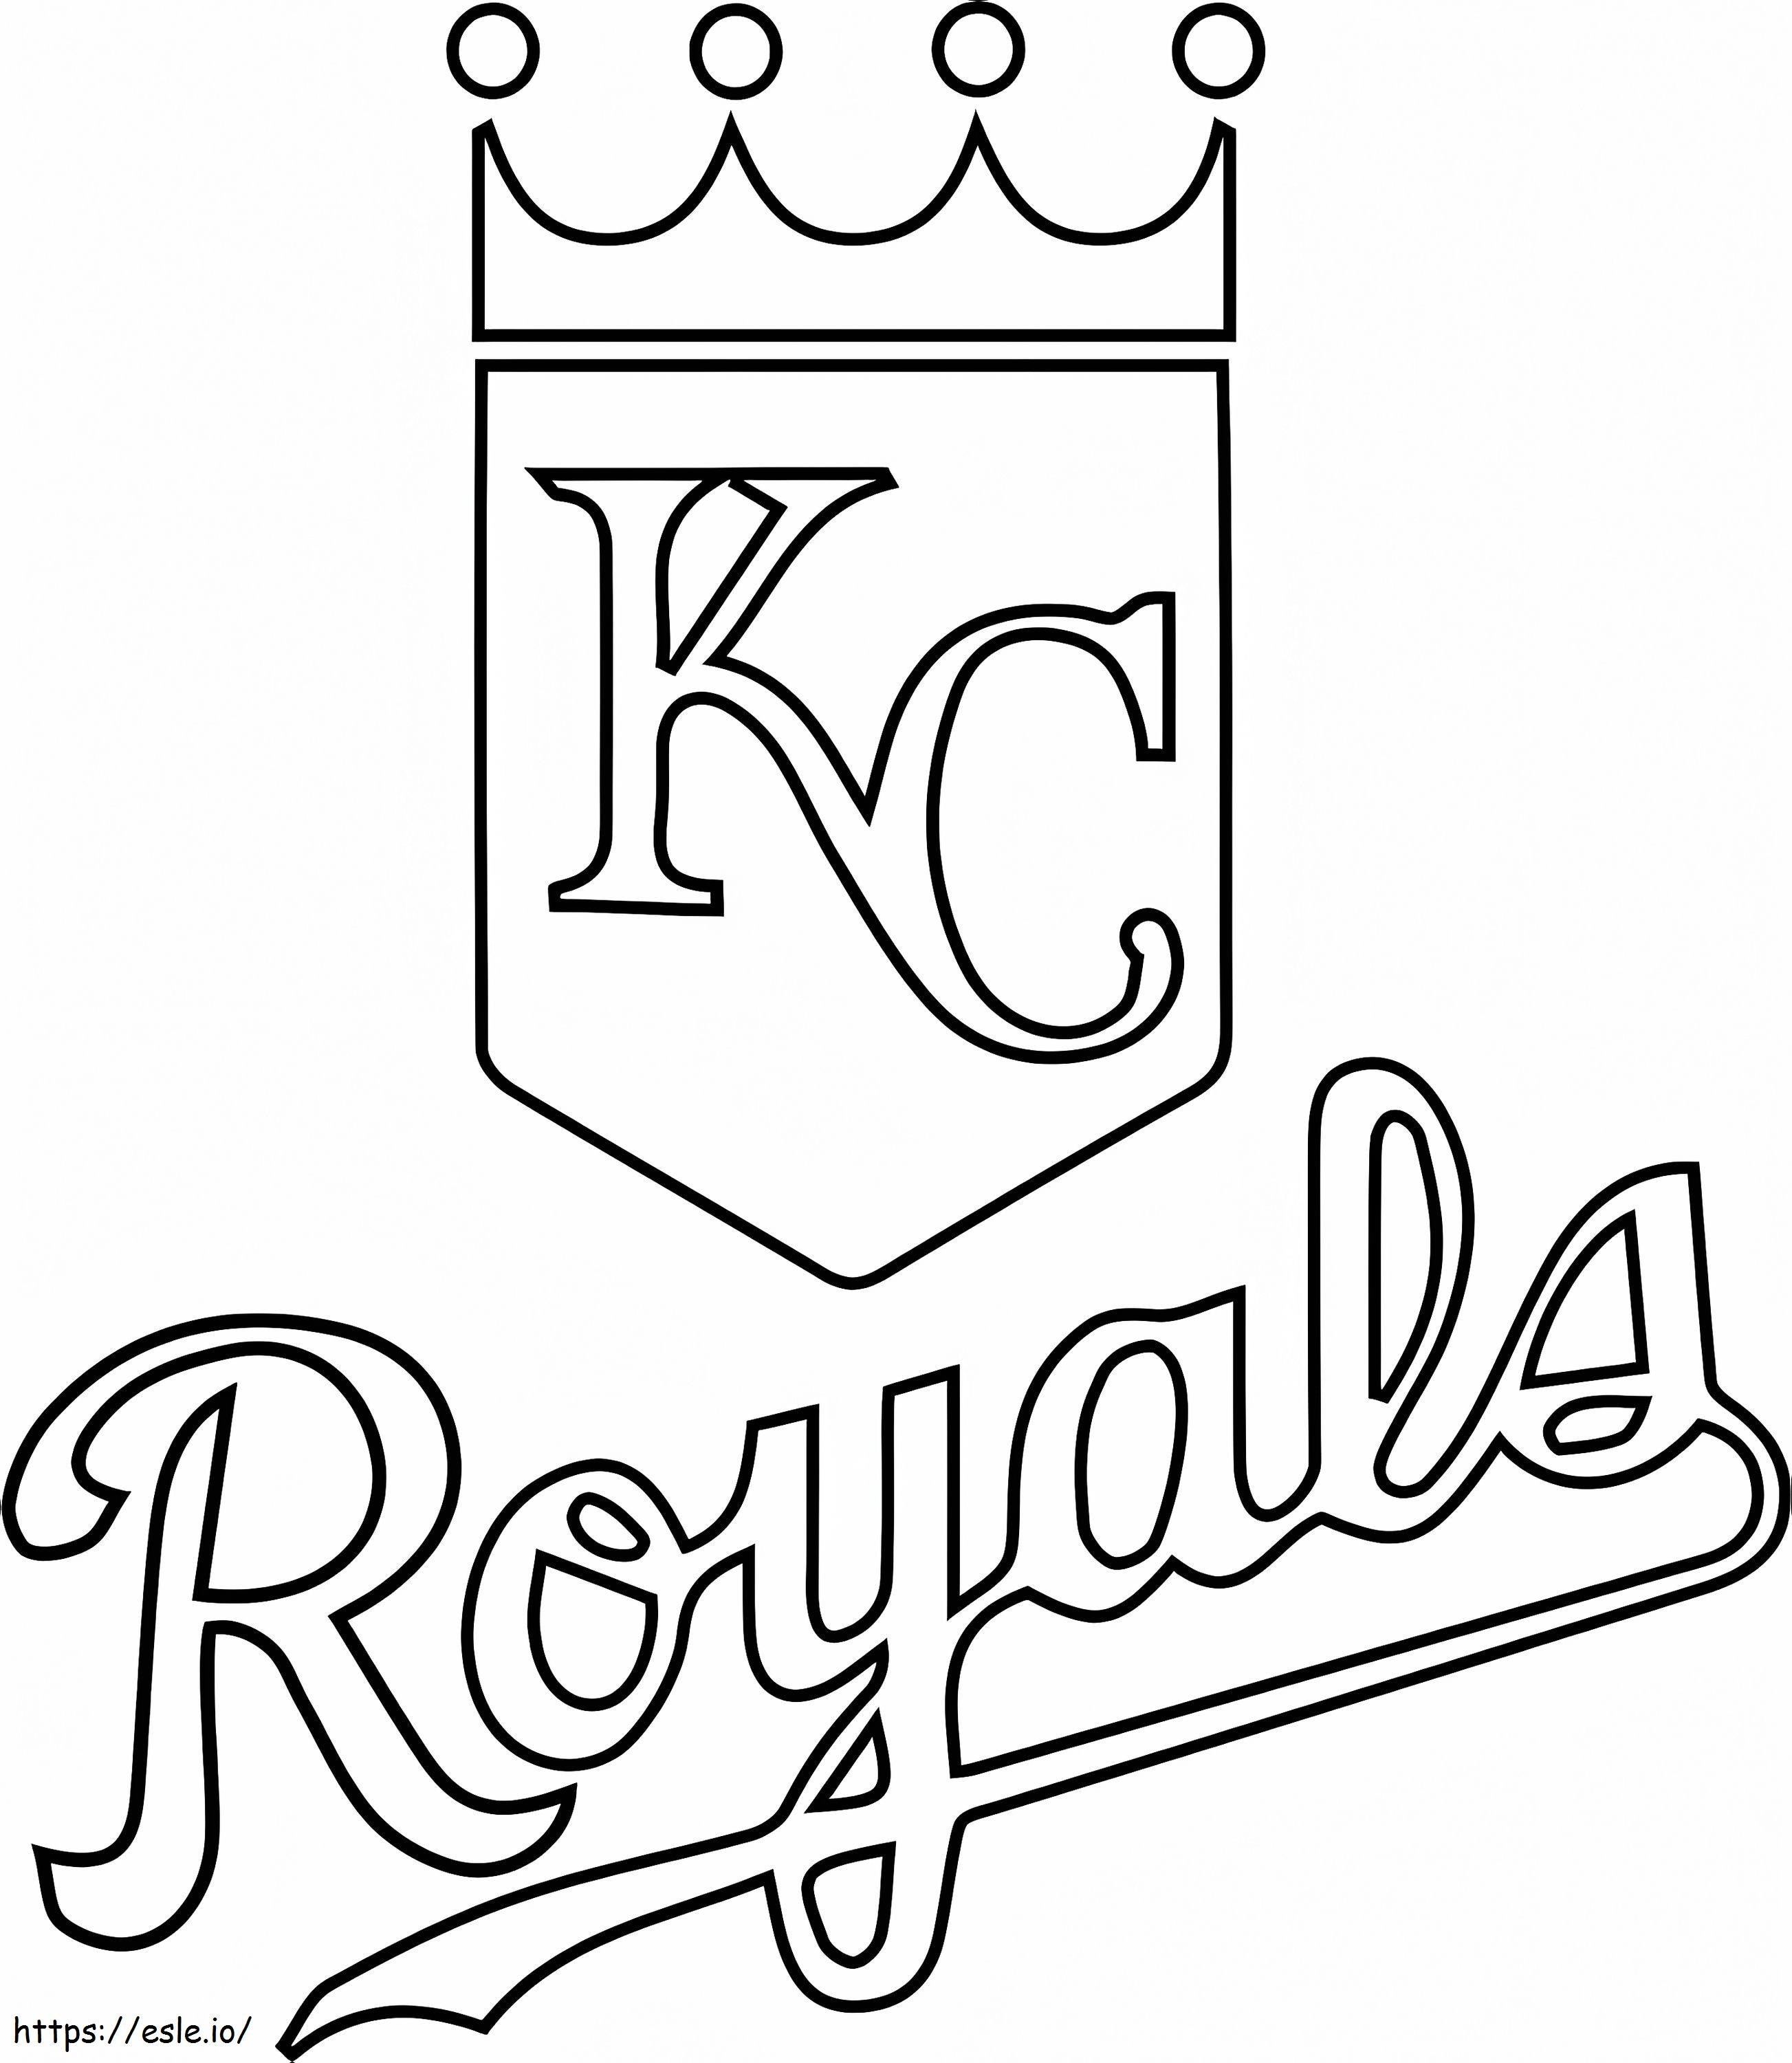 Kansas City Royals Logo coloring page